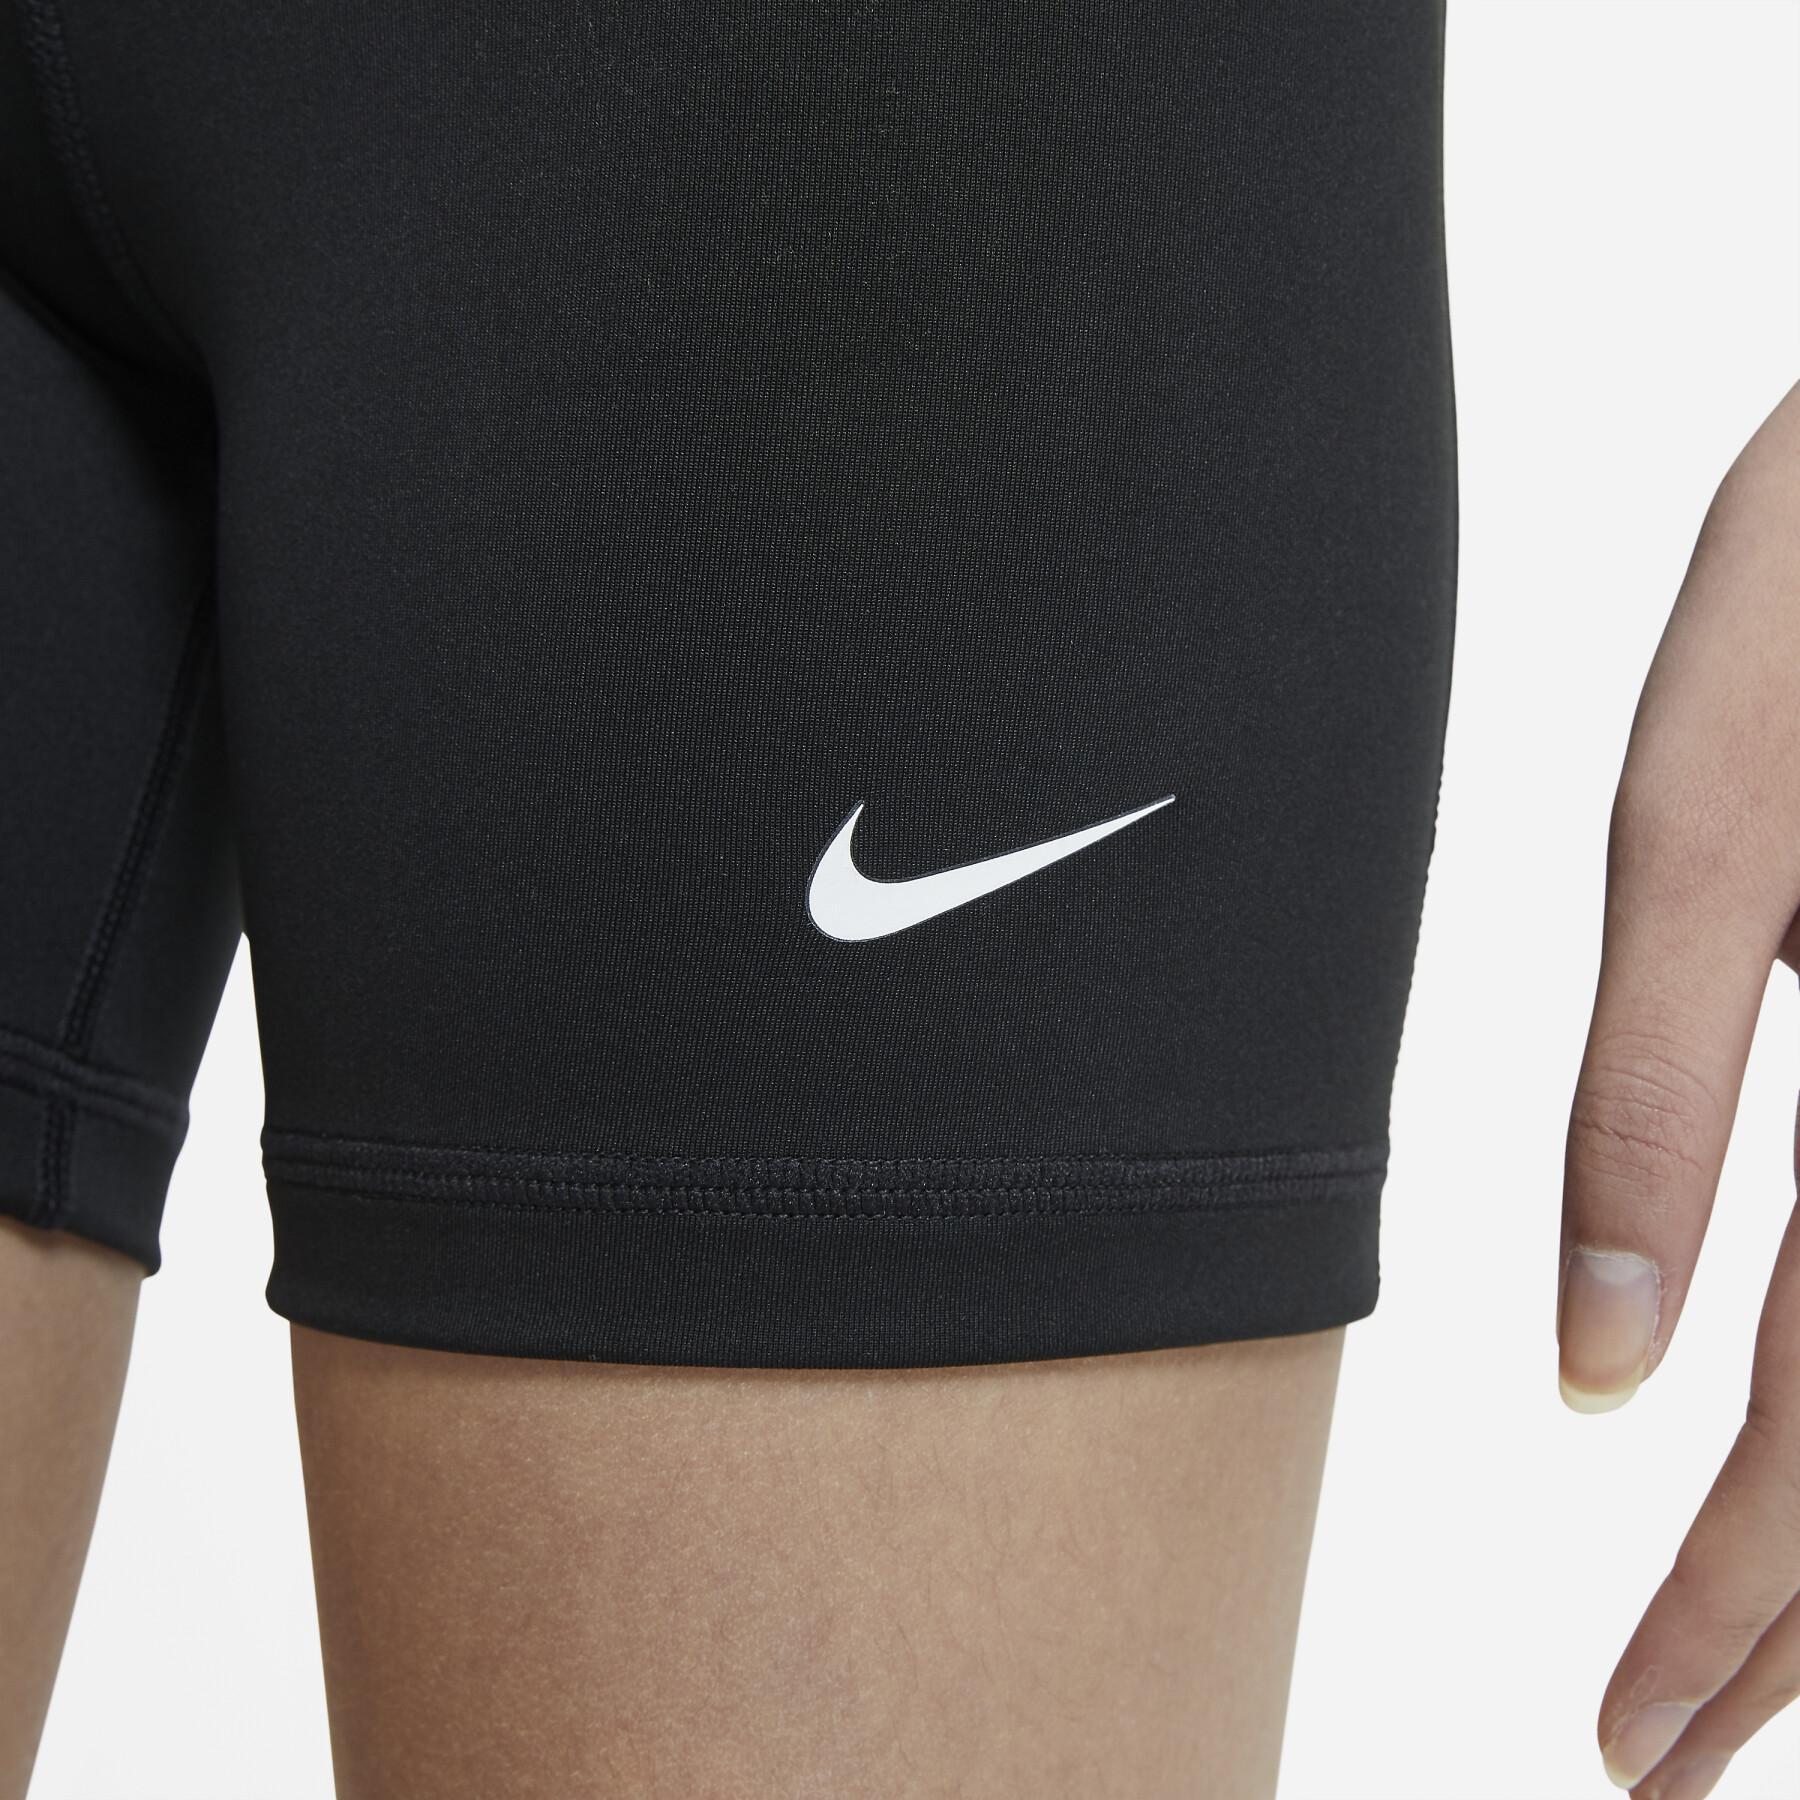 Short broek voor meisjes Nike Pro